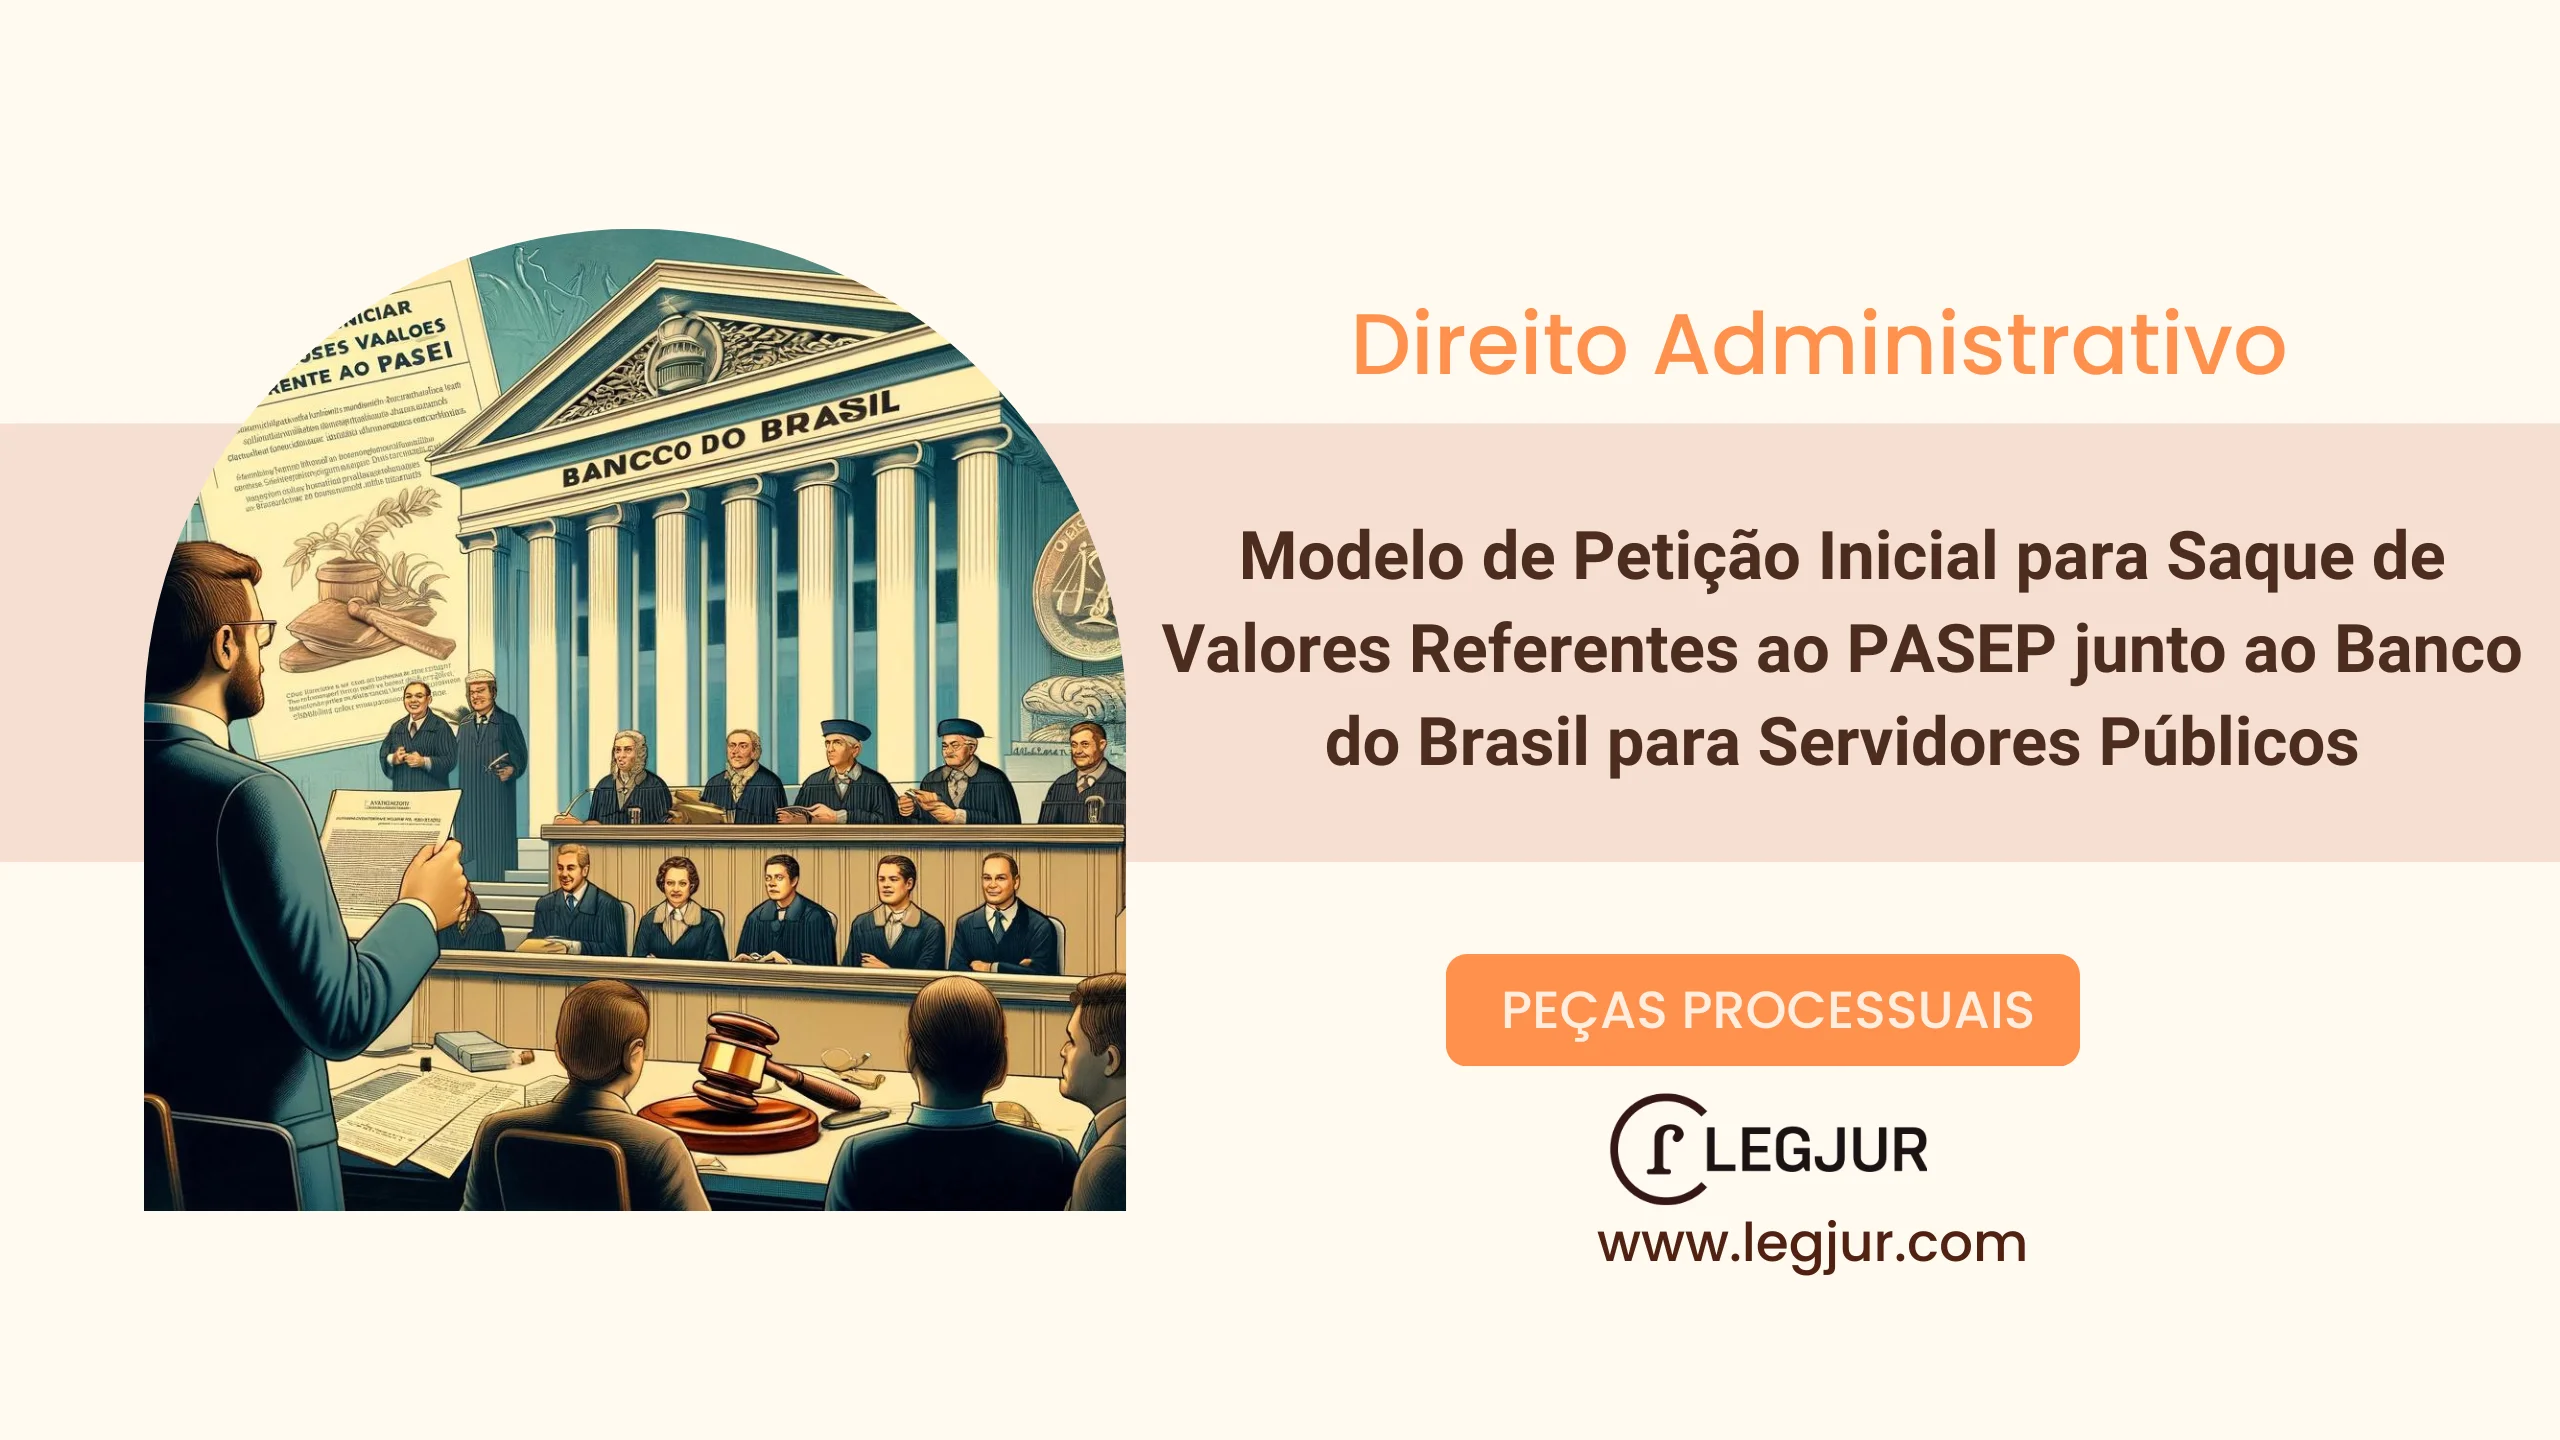 Modelo de Petição Inicial para Saque de Valores Referentes ao PASEP junto ao Banco do Brasil para Servidores Públicos